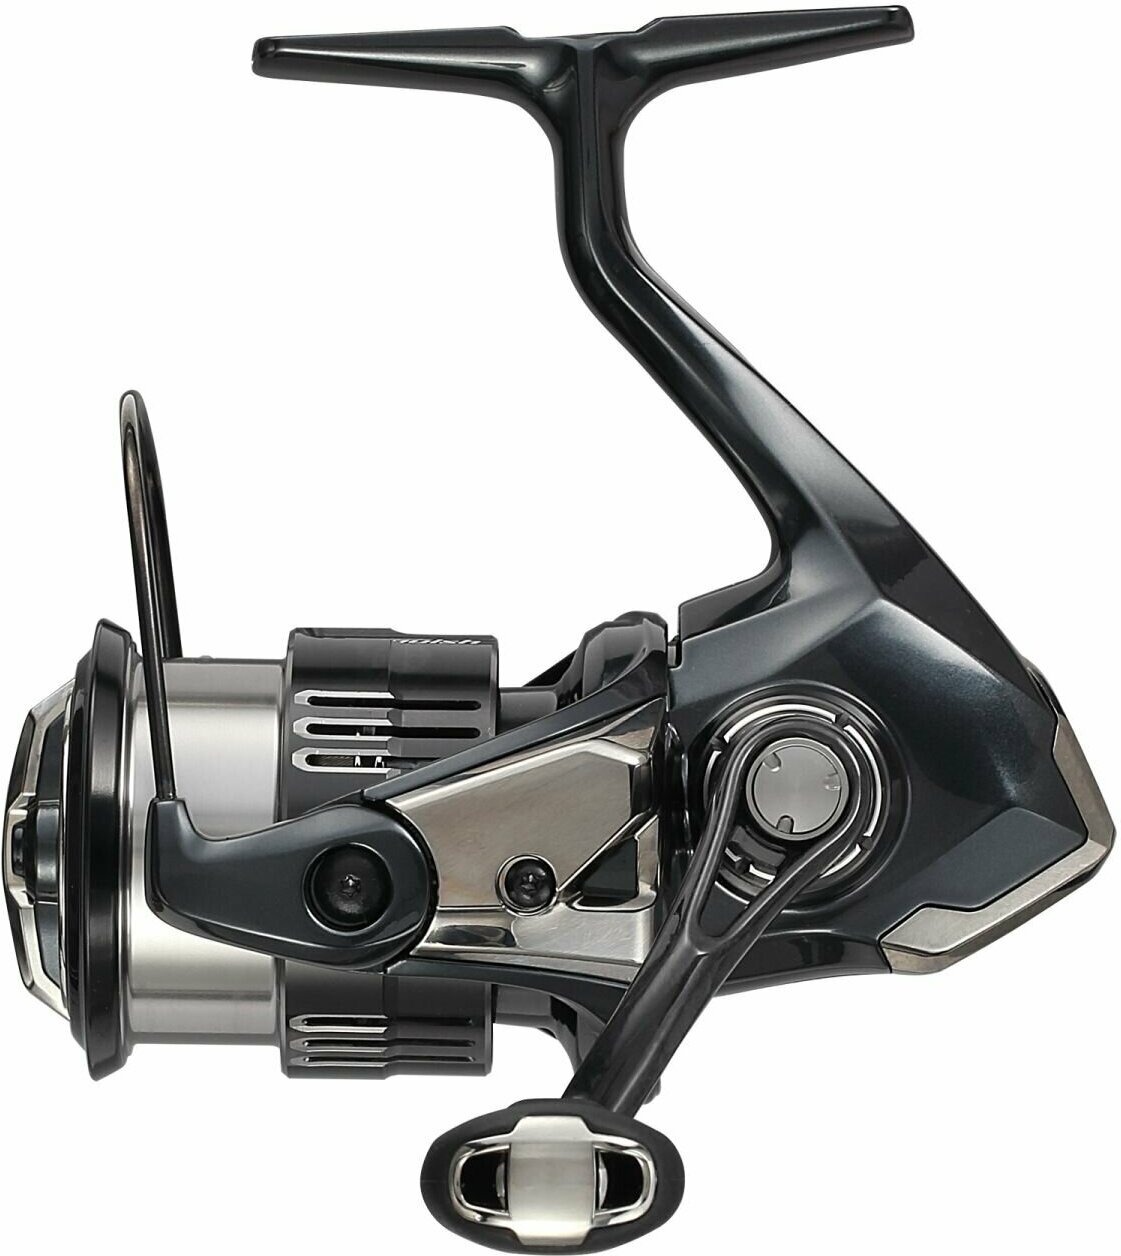 Катушка для рыбалки Shimano 19 Vanquish FB C5000XG, безынерционная, для спиннинга, на щуку, окуня, судака, таймень